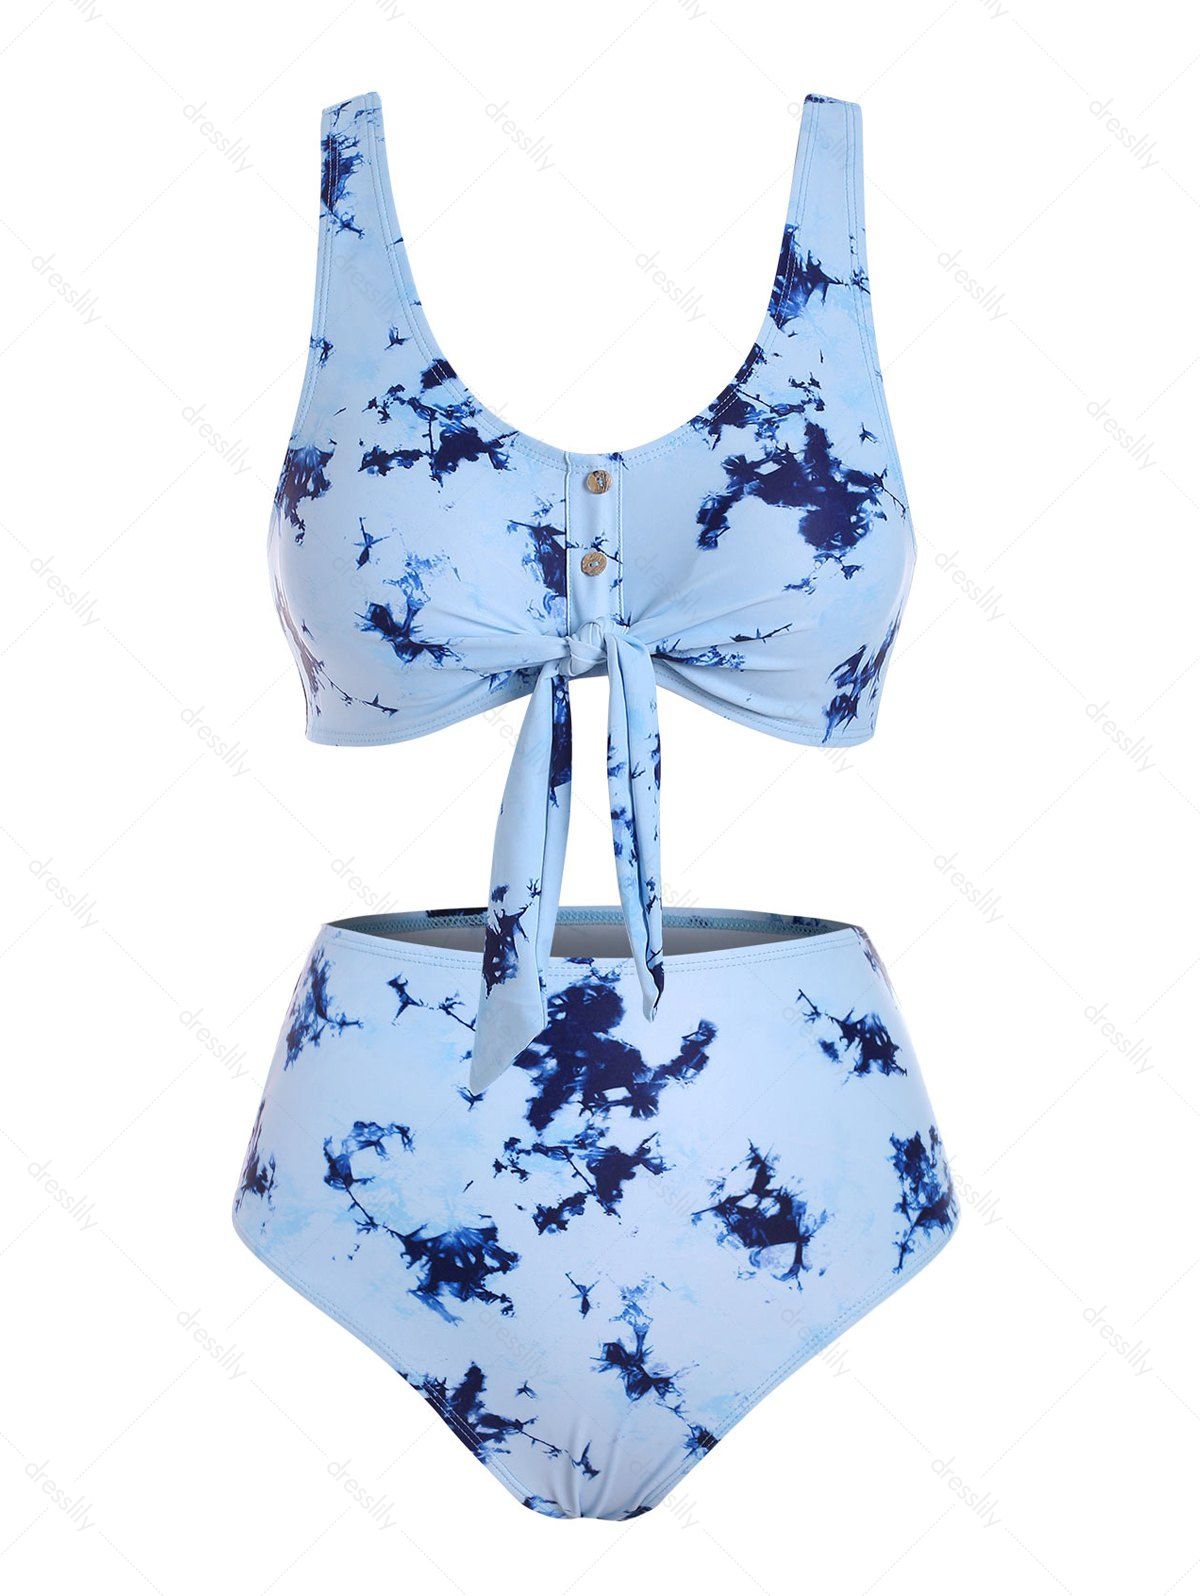 Tie Dye Bikini Swimwear Tummy Control Swimsuit Mock Button Tied Front Beach Bathing Suit - PASTEL BLUE L